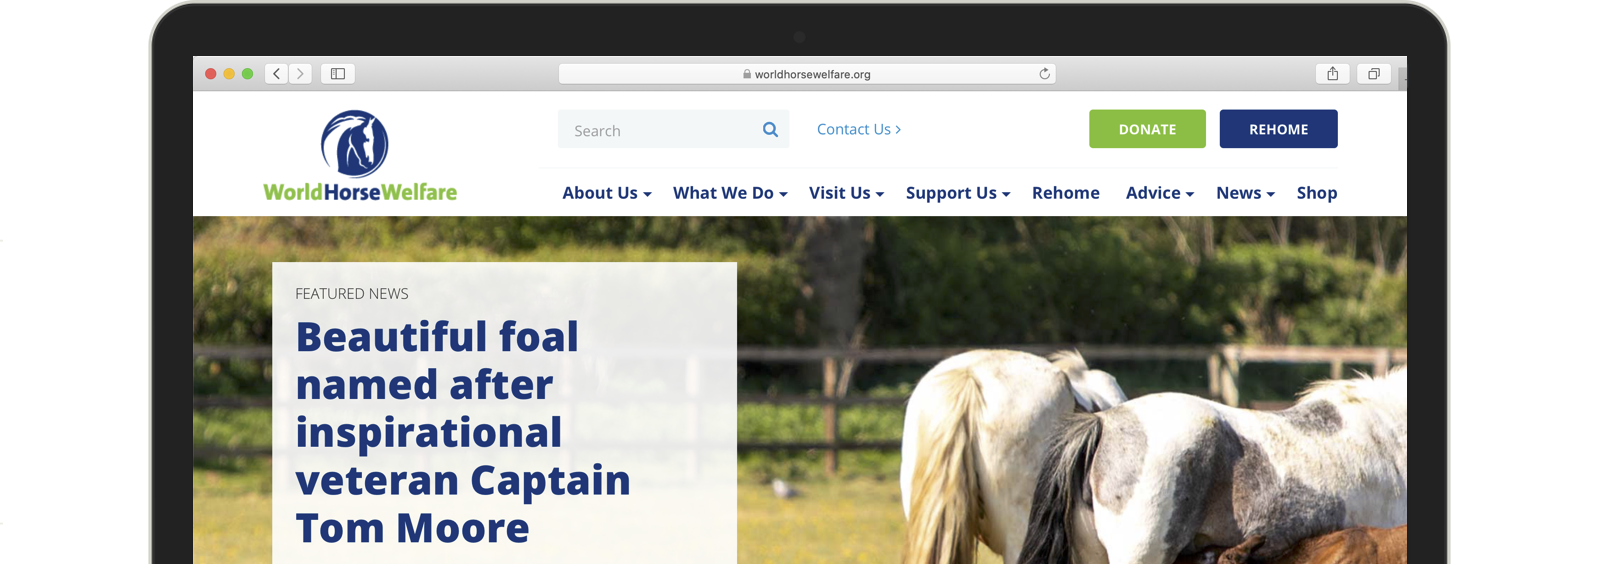 Lead developer for the World Horse Welfare website